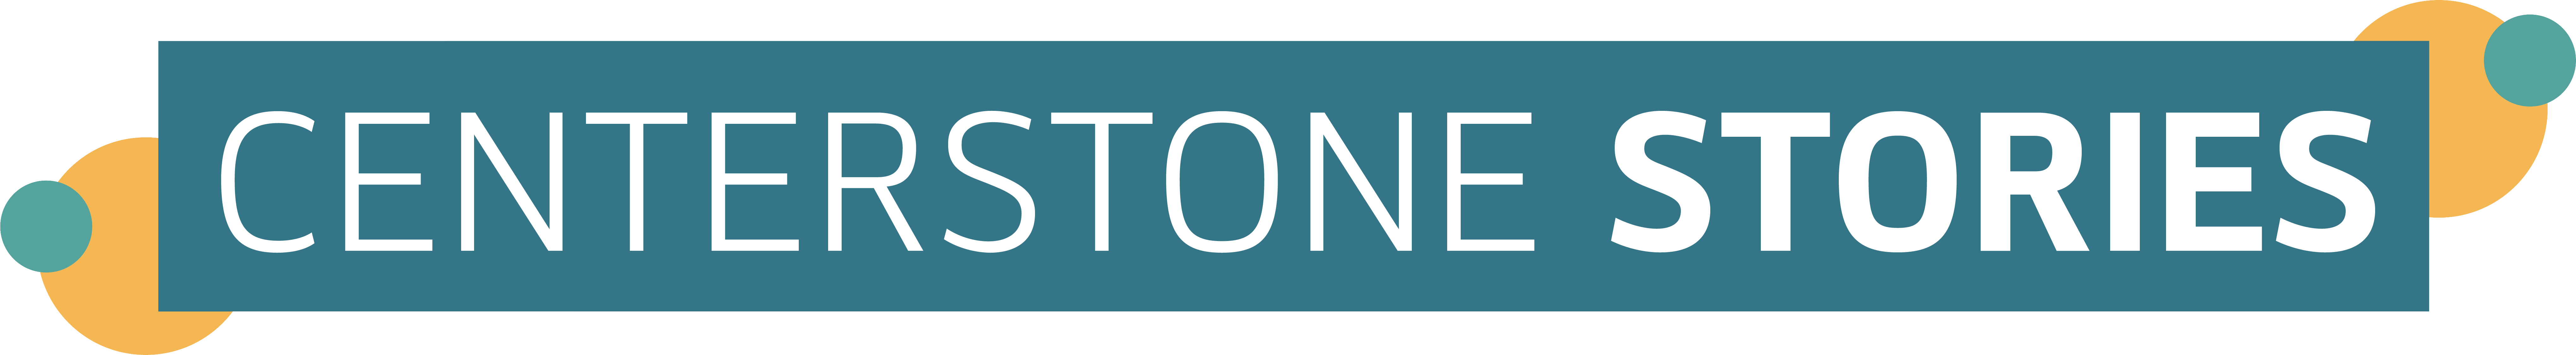 Centerstone Stories Banner